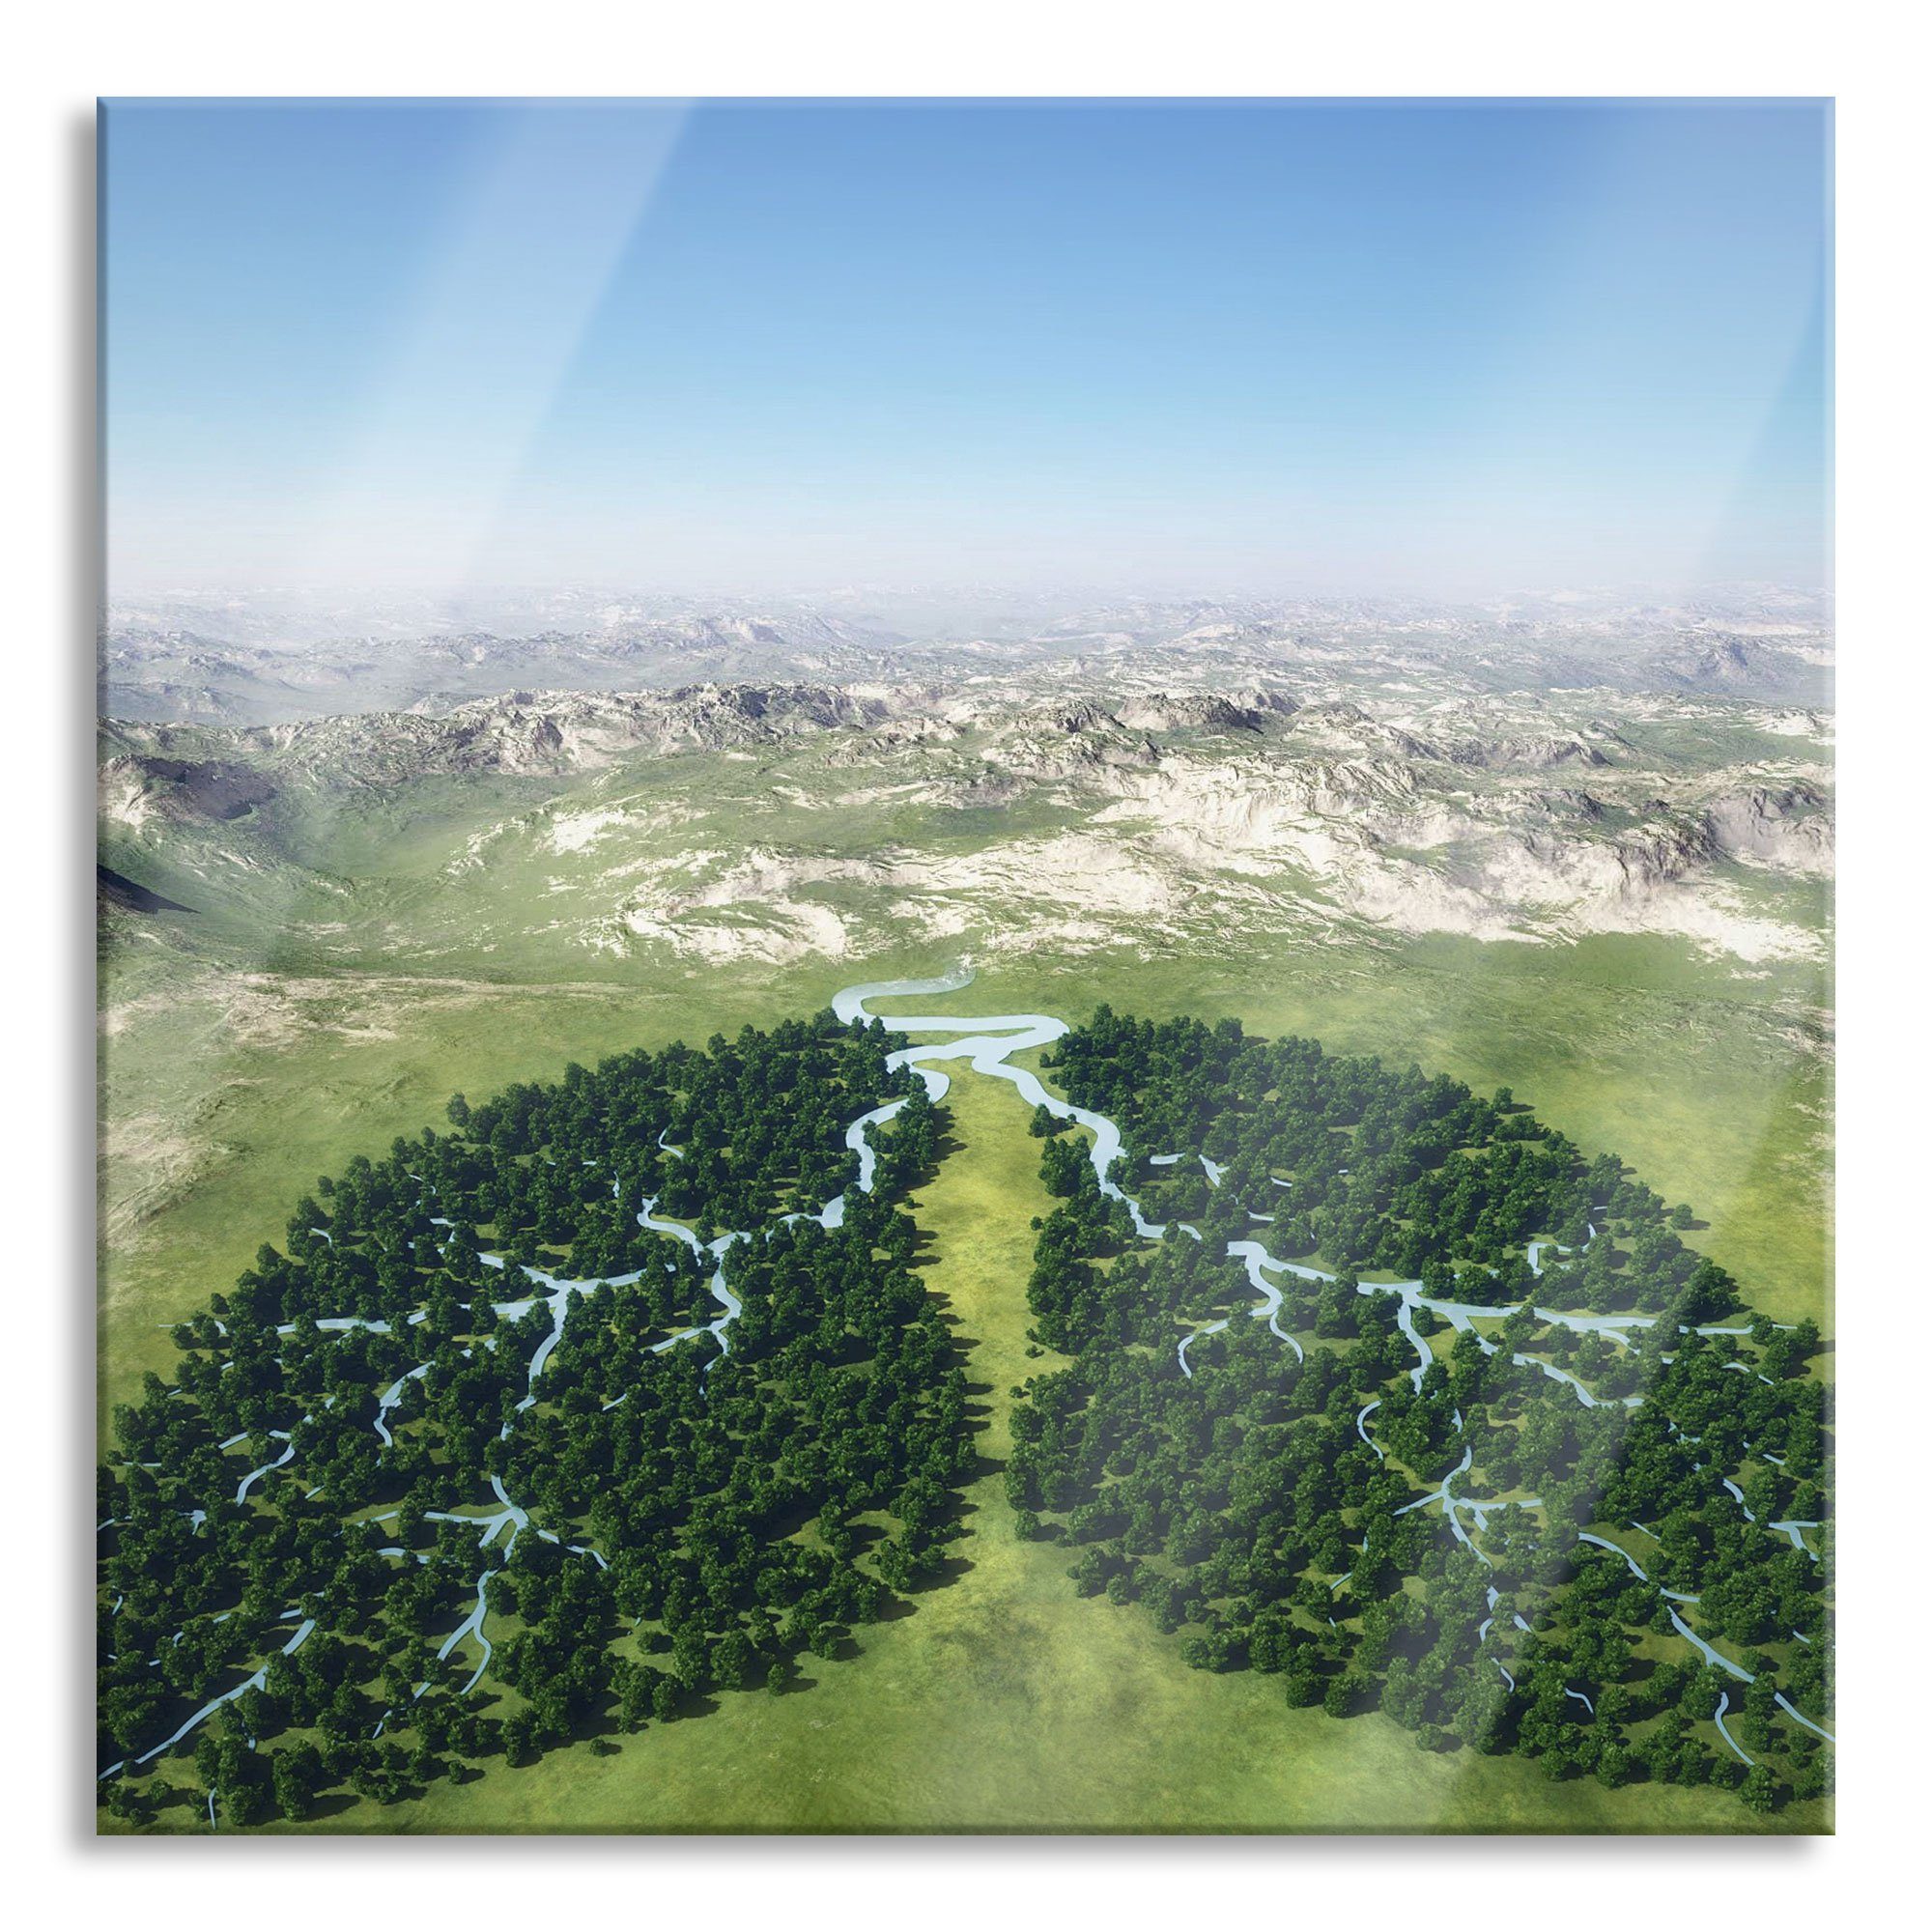 Pixxprint Glasbild Grüne Lunge der Natur, Grüne Lunge der Natur (1 St), Glasbild aus Echtglas, inkl. Aufhängungen und Abstandshalter